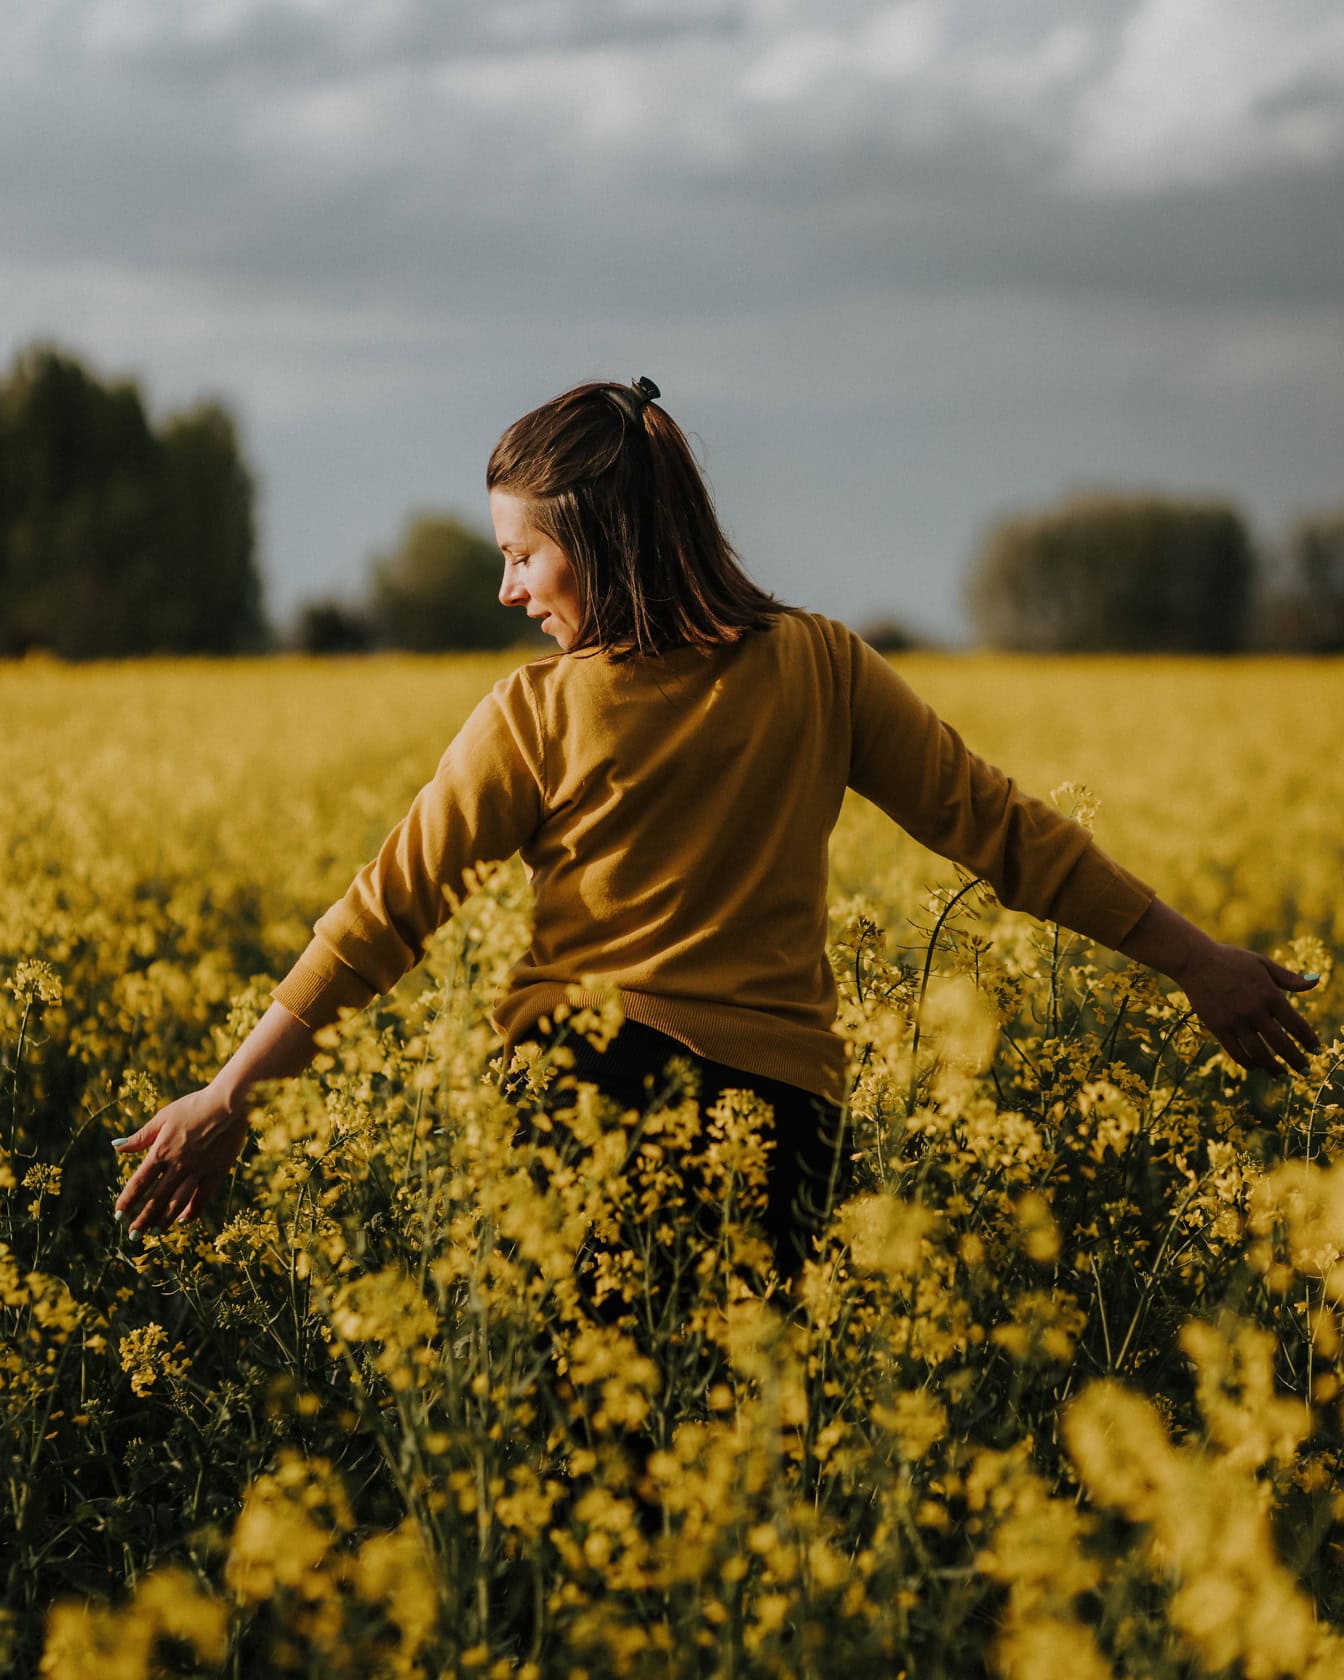 Eine fröhliche junge Frau steht in einem gelblichen Blumenfeld und berührt es mit offenen Armen